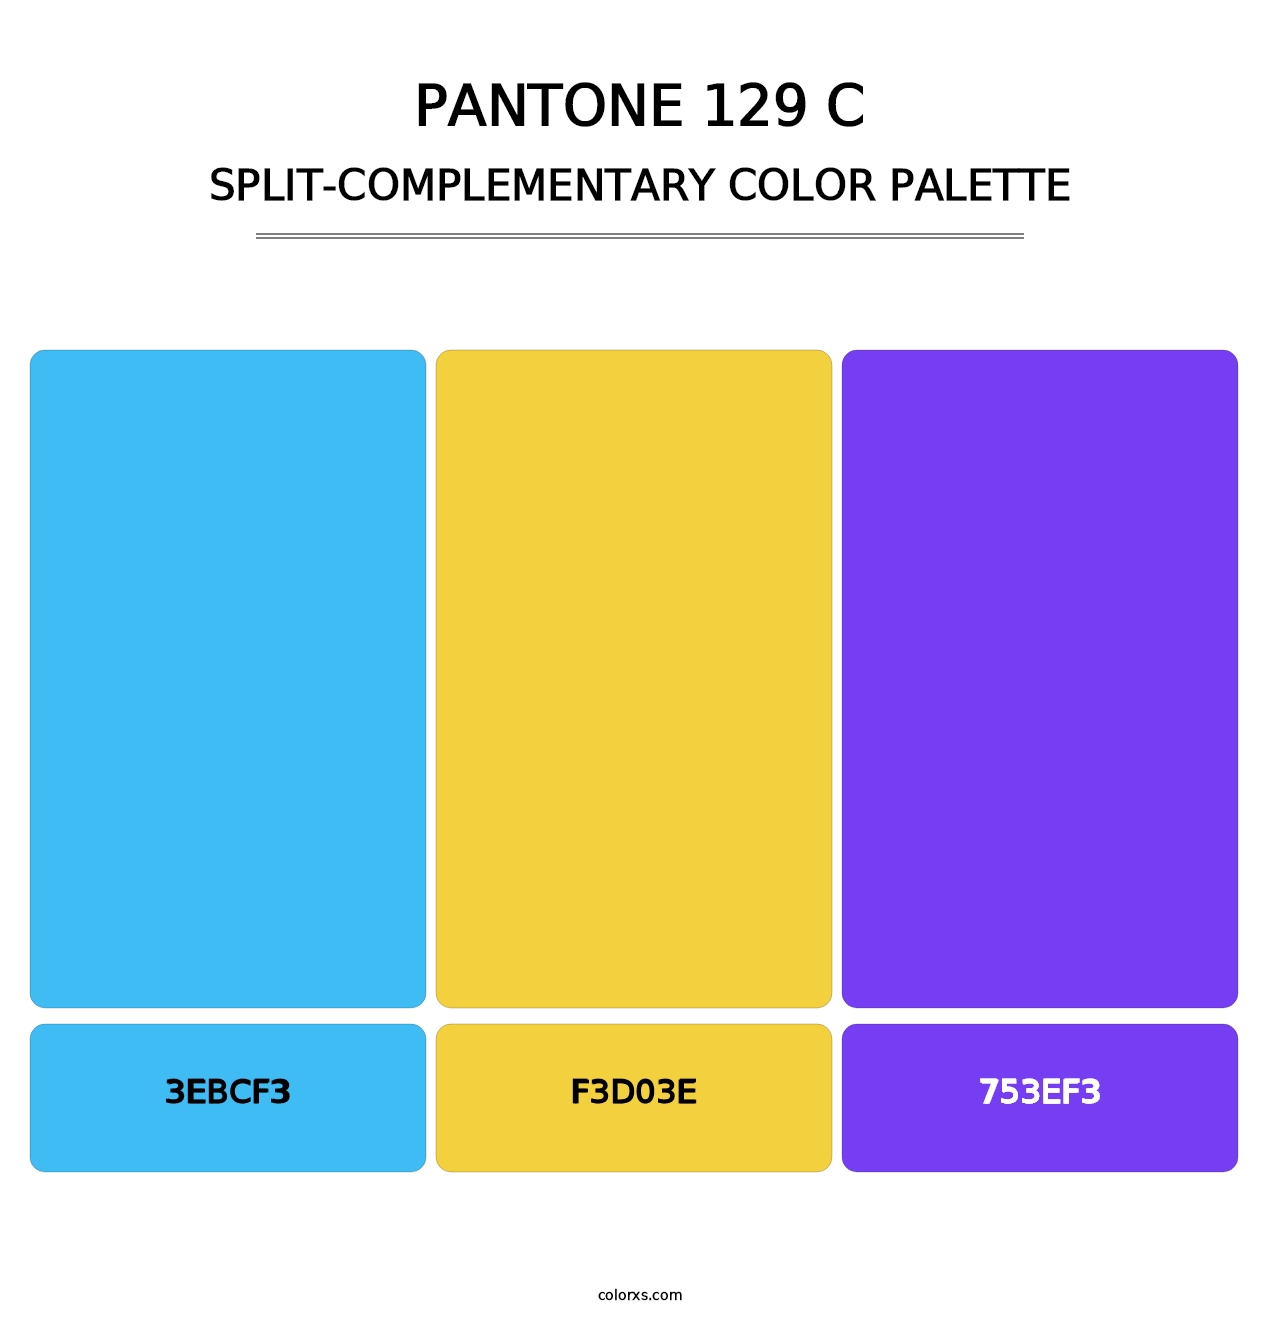 PANTONE 129 C - Split-Complementary Color Palette